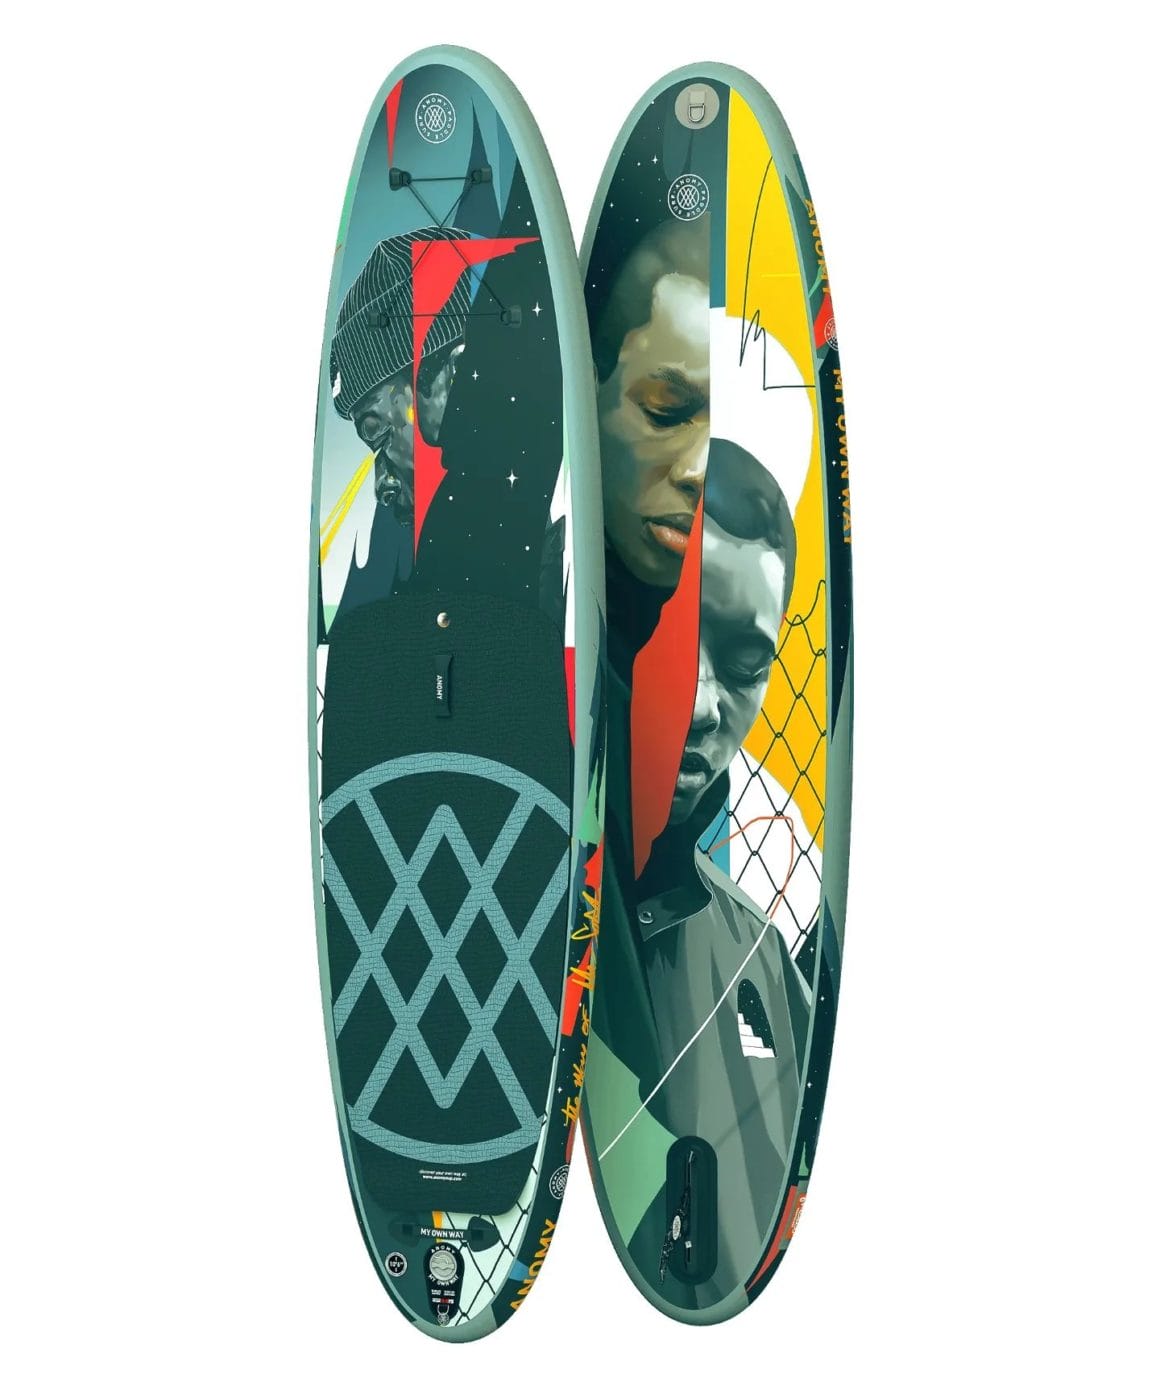 Deux planches de surf son sur un fond blanc. Elles sont customisées par les lèvres de Mr.Sor2